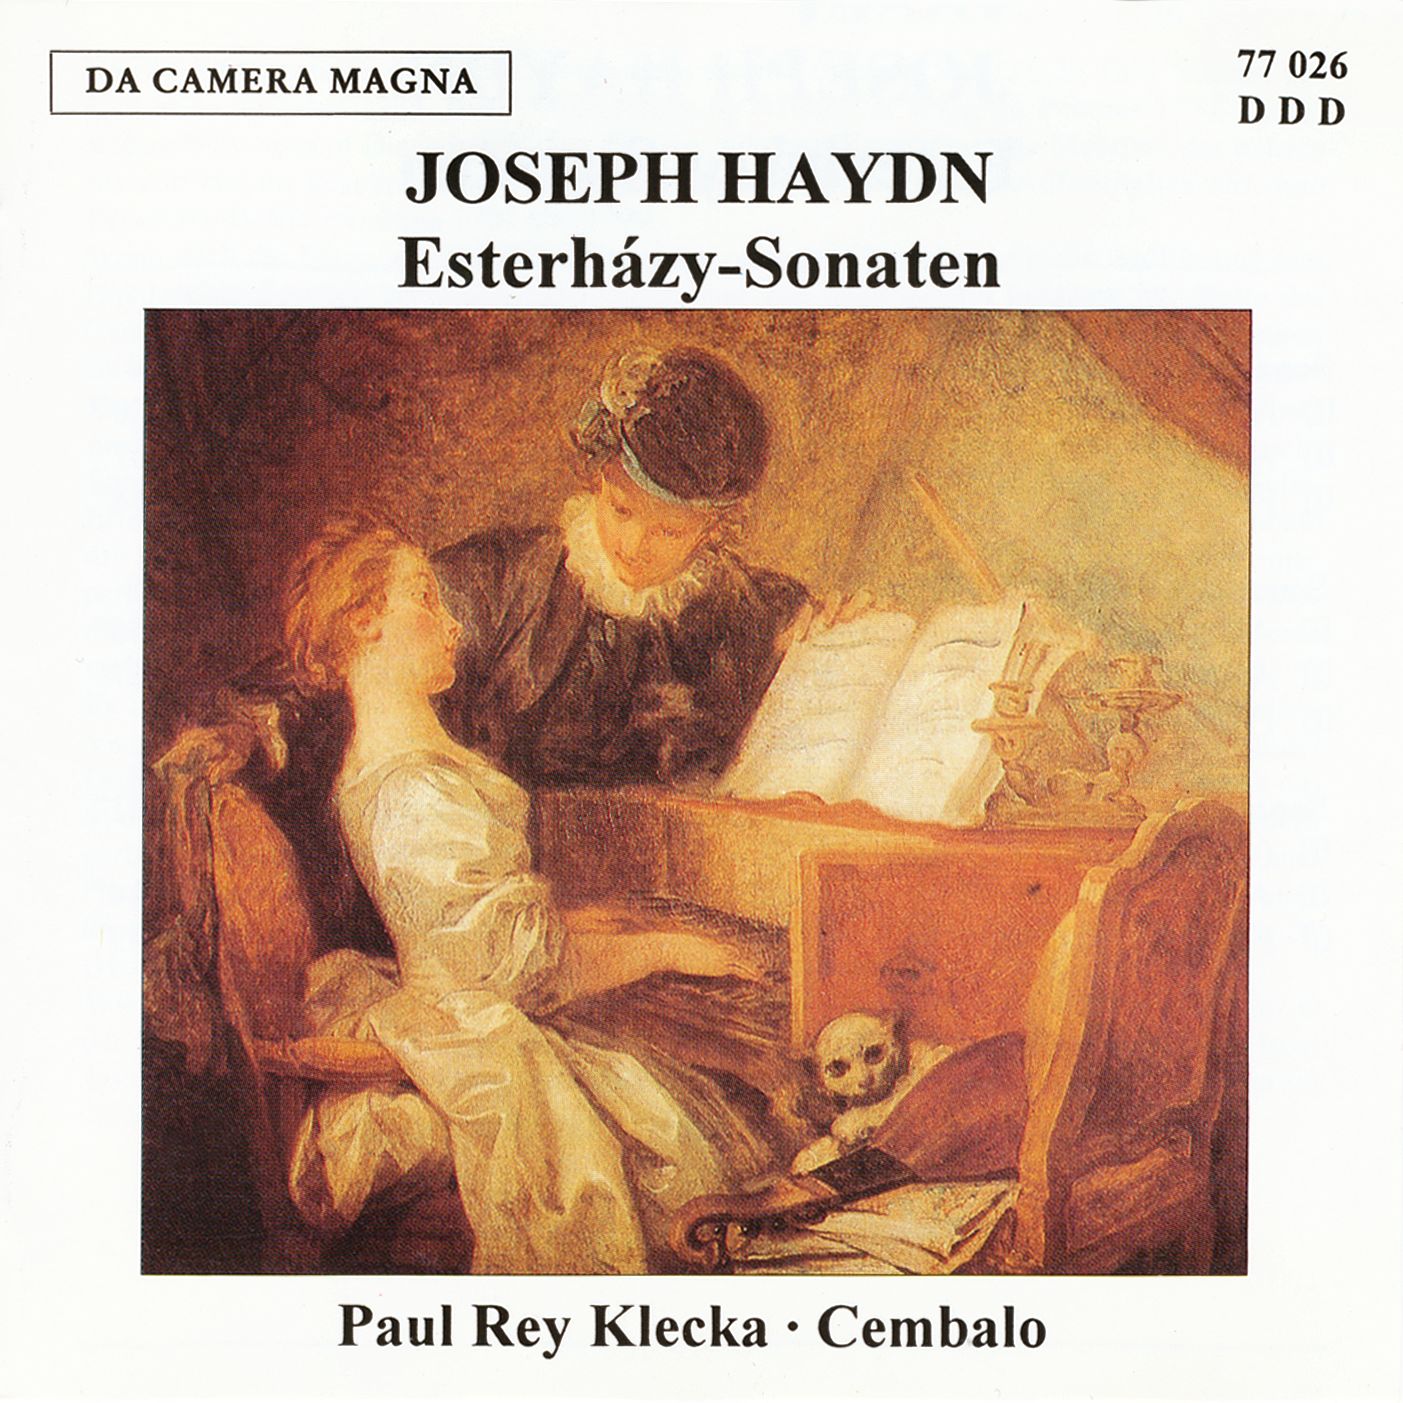 Joseph Haydn - Esterházy-Sonaten